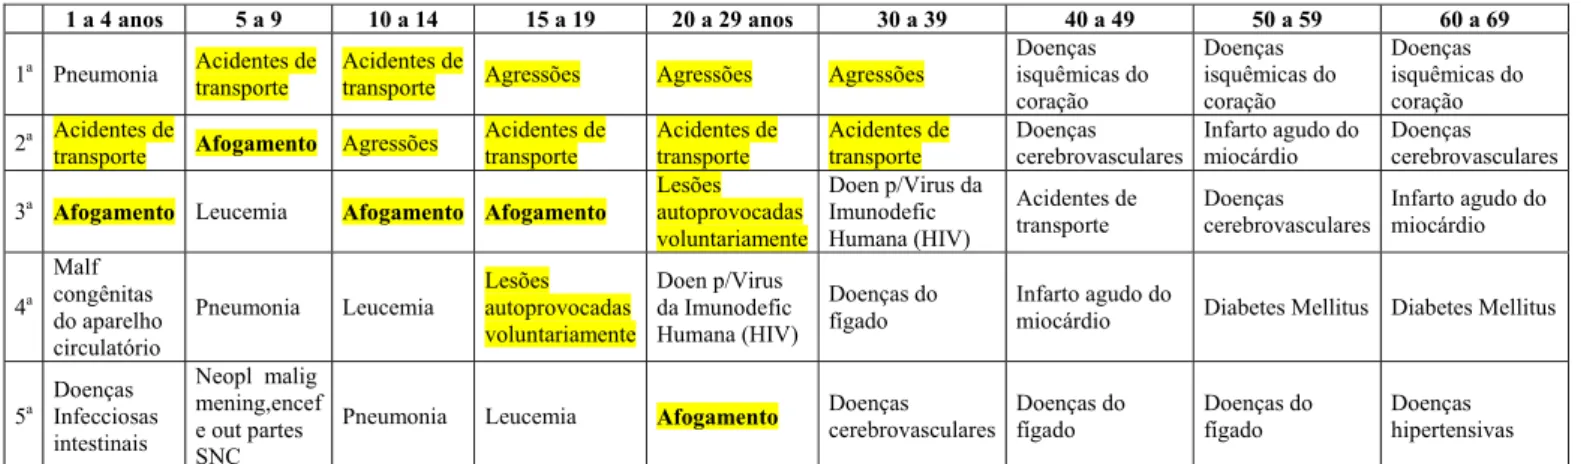 Tabela 1 – Dados tabulados com base no Sistema de Informação em Mortalidade (SIM) – ano 2007, Ministério da  Saúde - DATASUS - 2010